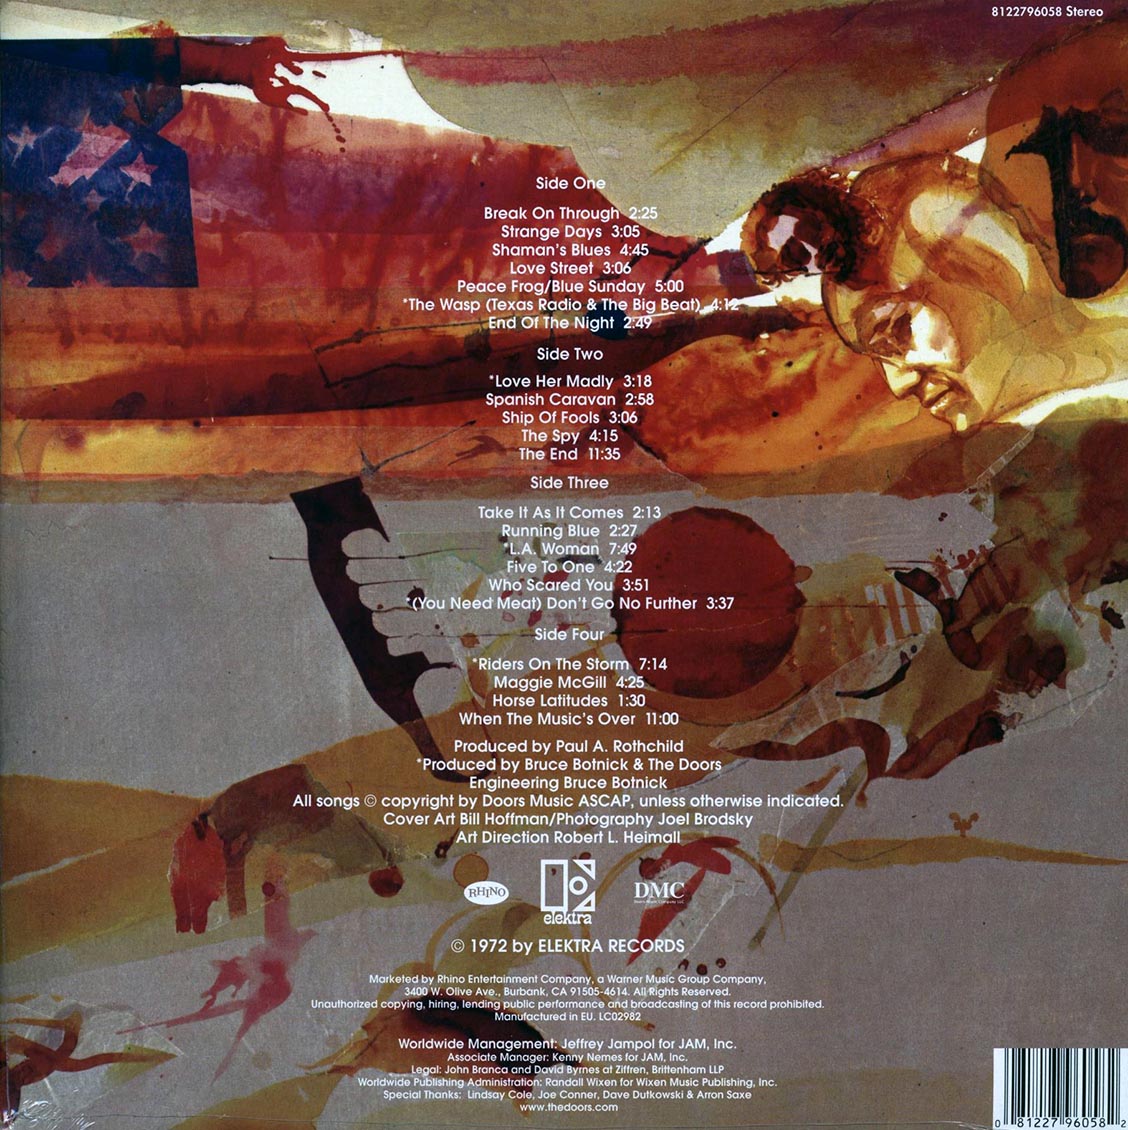 The Doors - Weird Scenes Inside The Gold Mine (2xLP) - Vinyl LP, LP